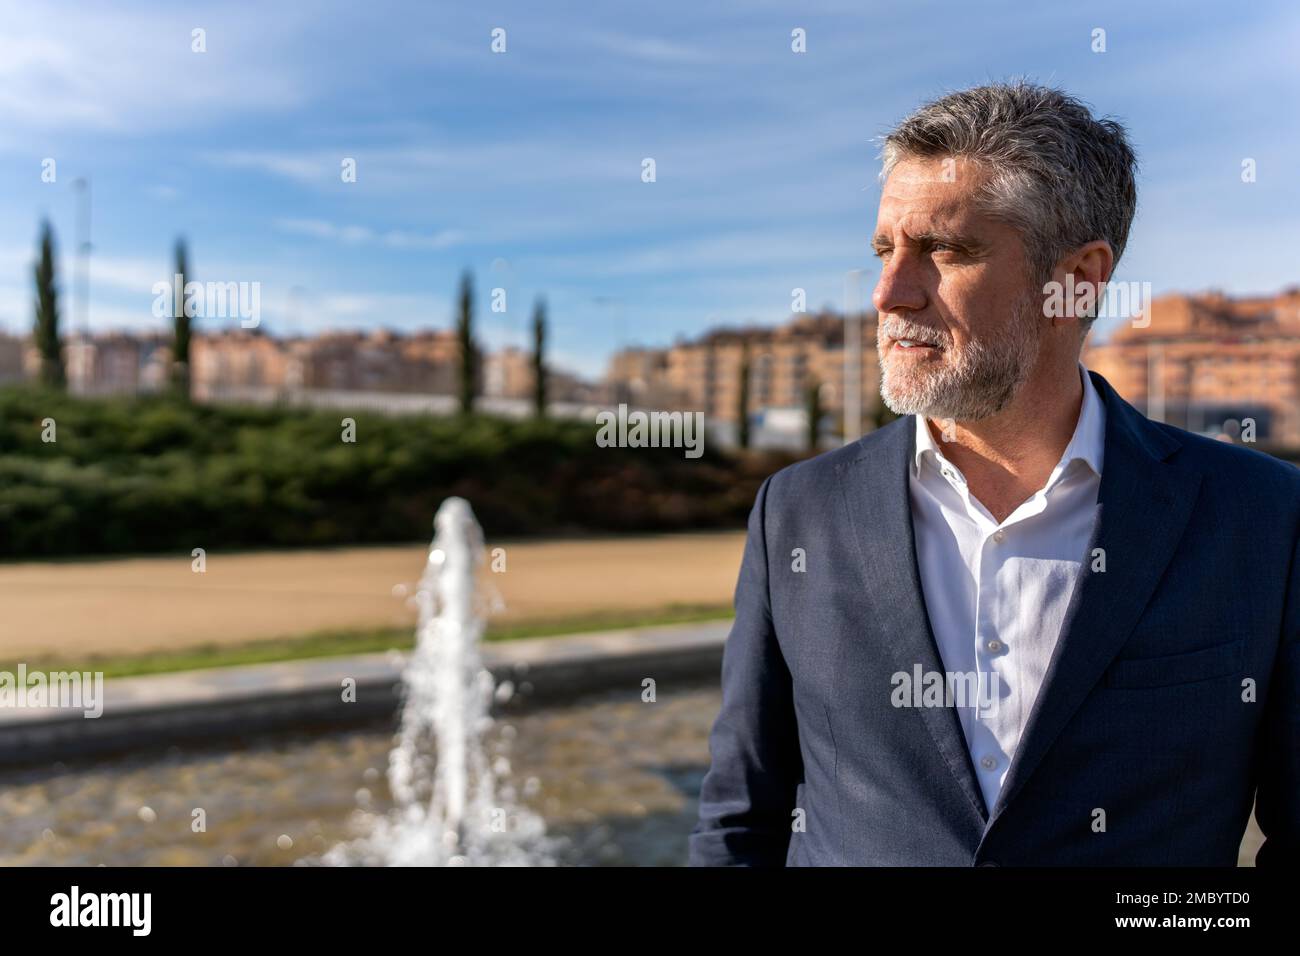 Ein durchdachter älterer Geschäftsmann mit grauen Haaren, der einen formellen Anzug trägt, steht neben dem Brunnen und blickt weg, während er die atemberaubende Landschaft bewundert Stockfoto